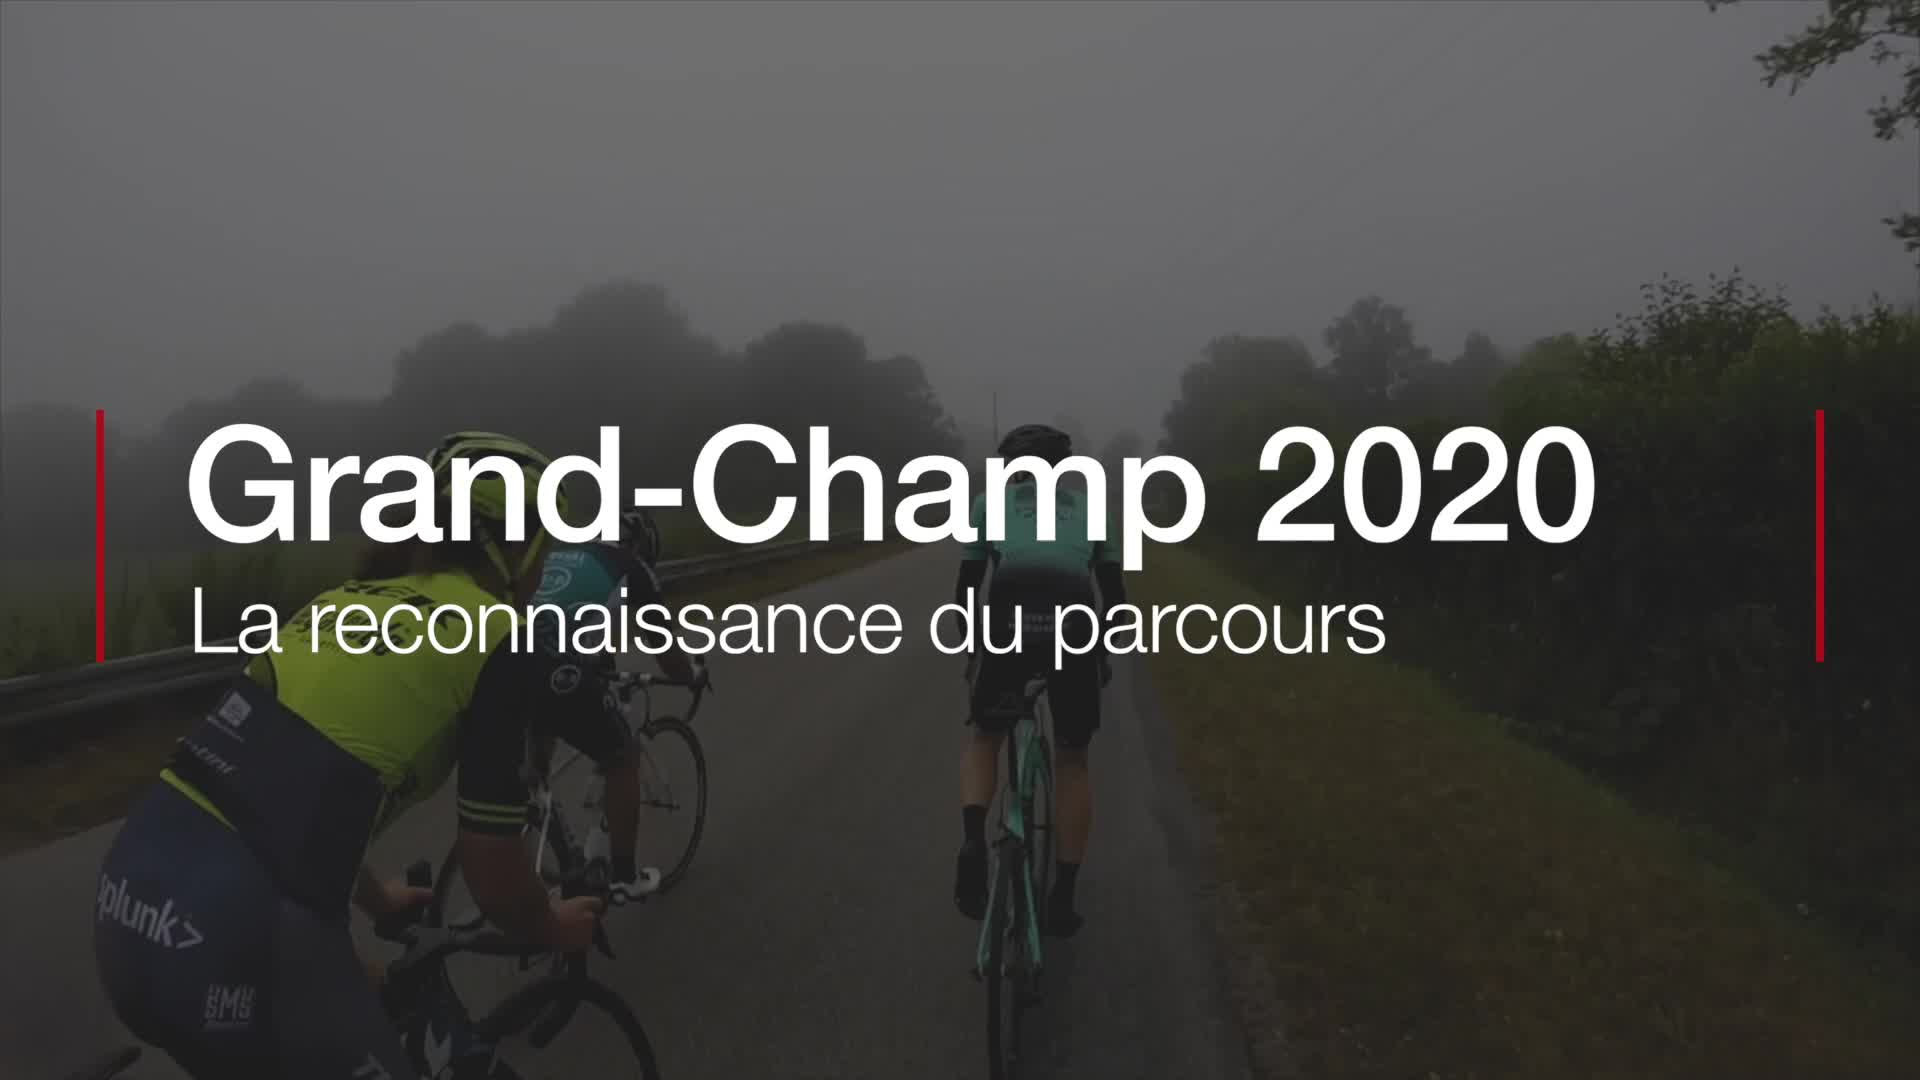 Grand-Champ 2020. La reconnaissance du parcours (Le Télégramme)